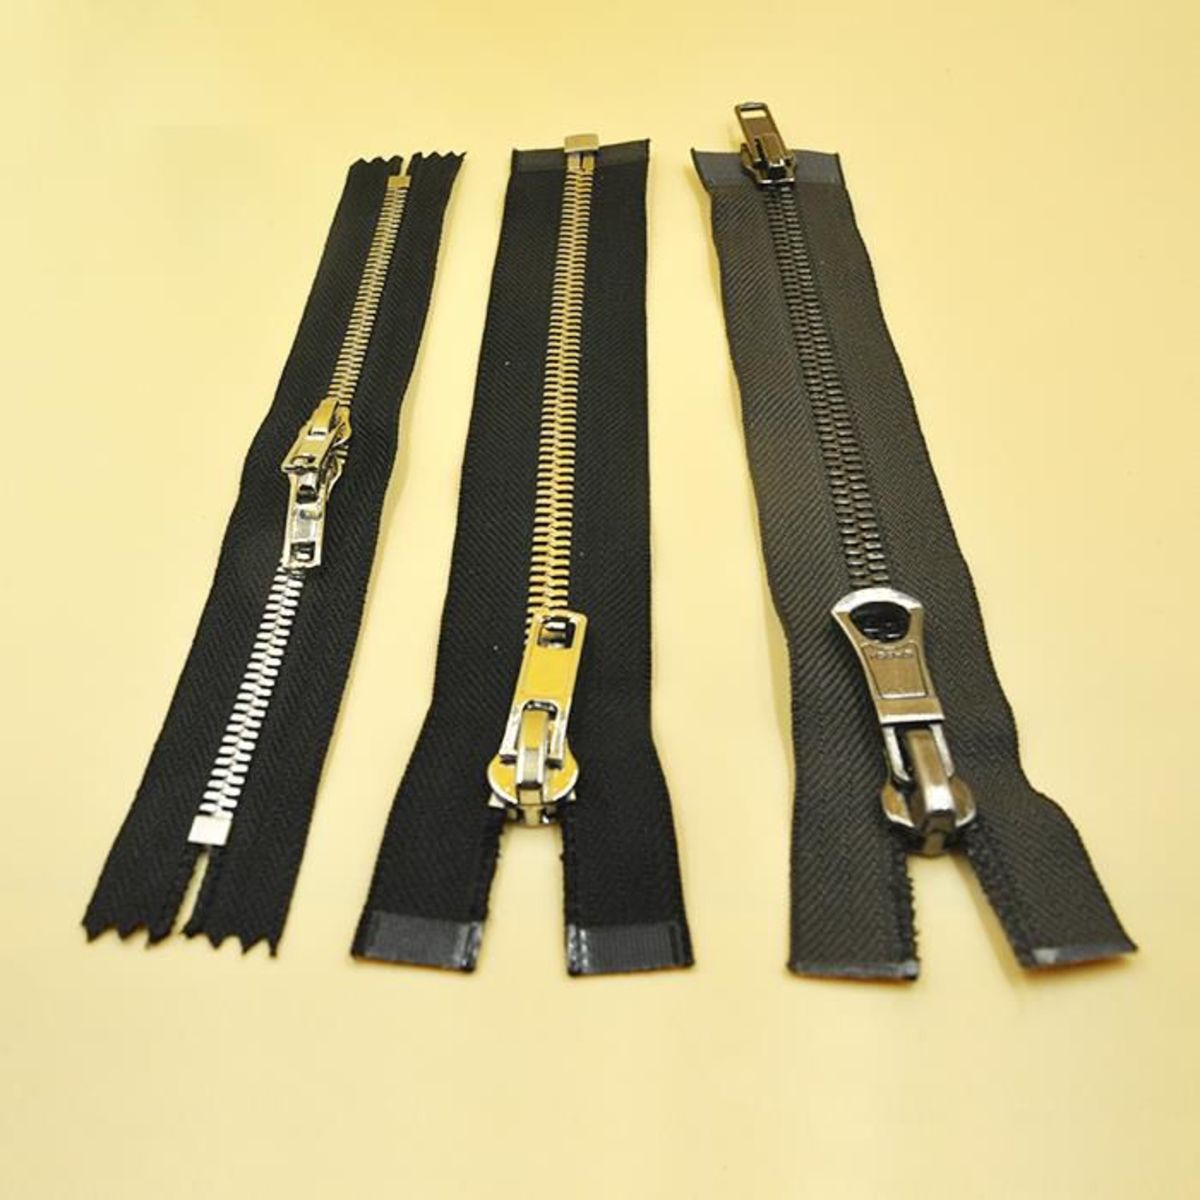 Modern Zippers